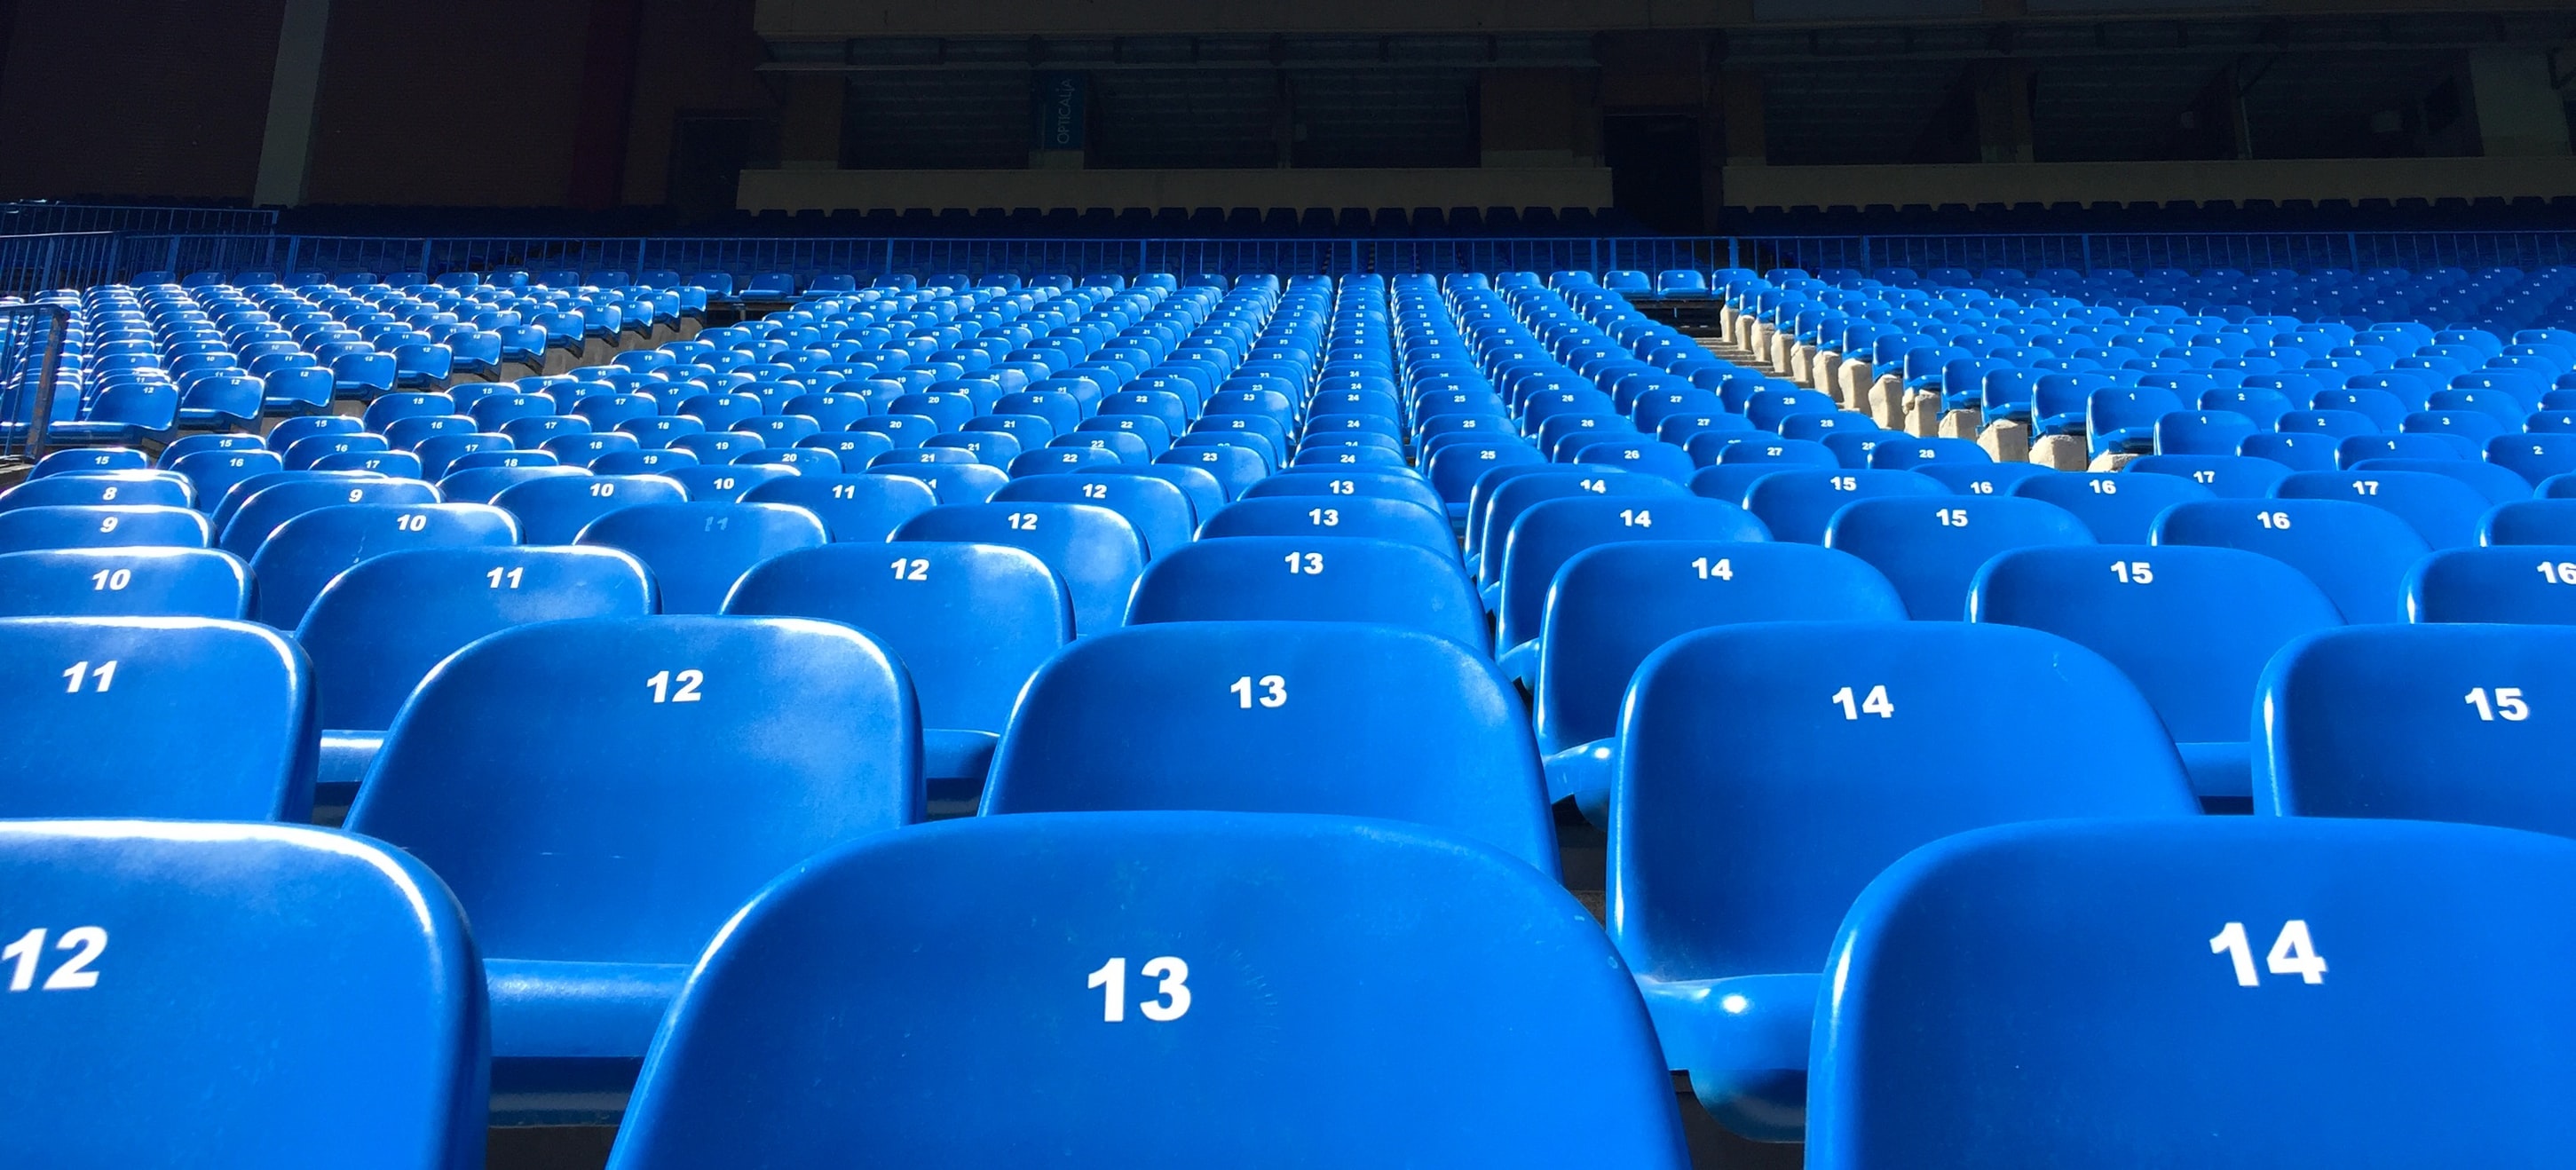 Stadium-Seats